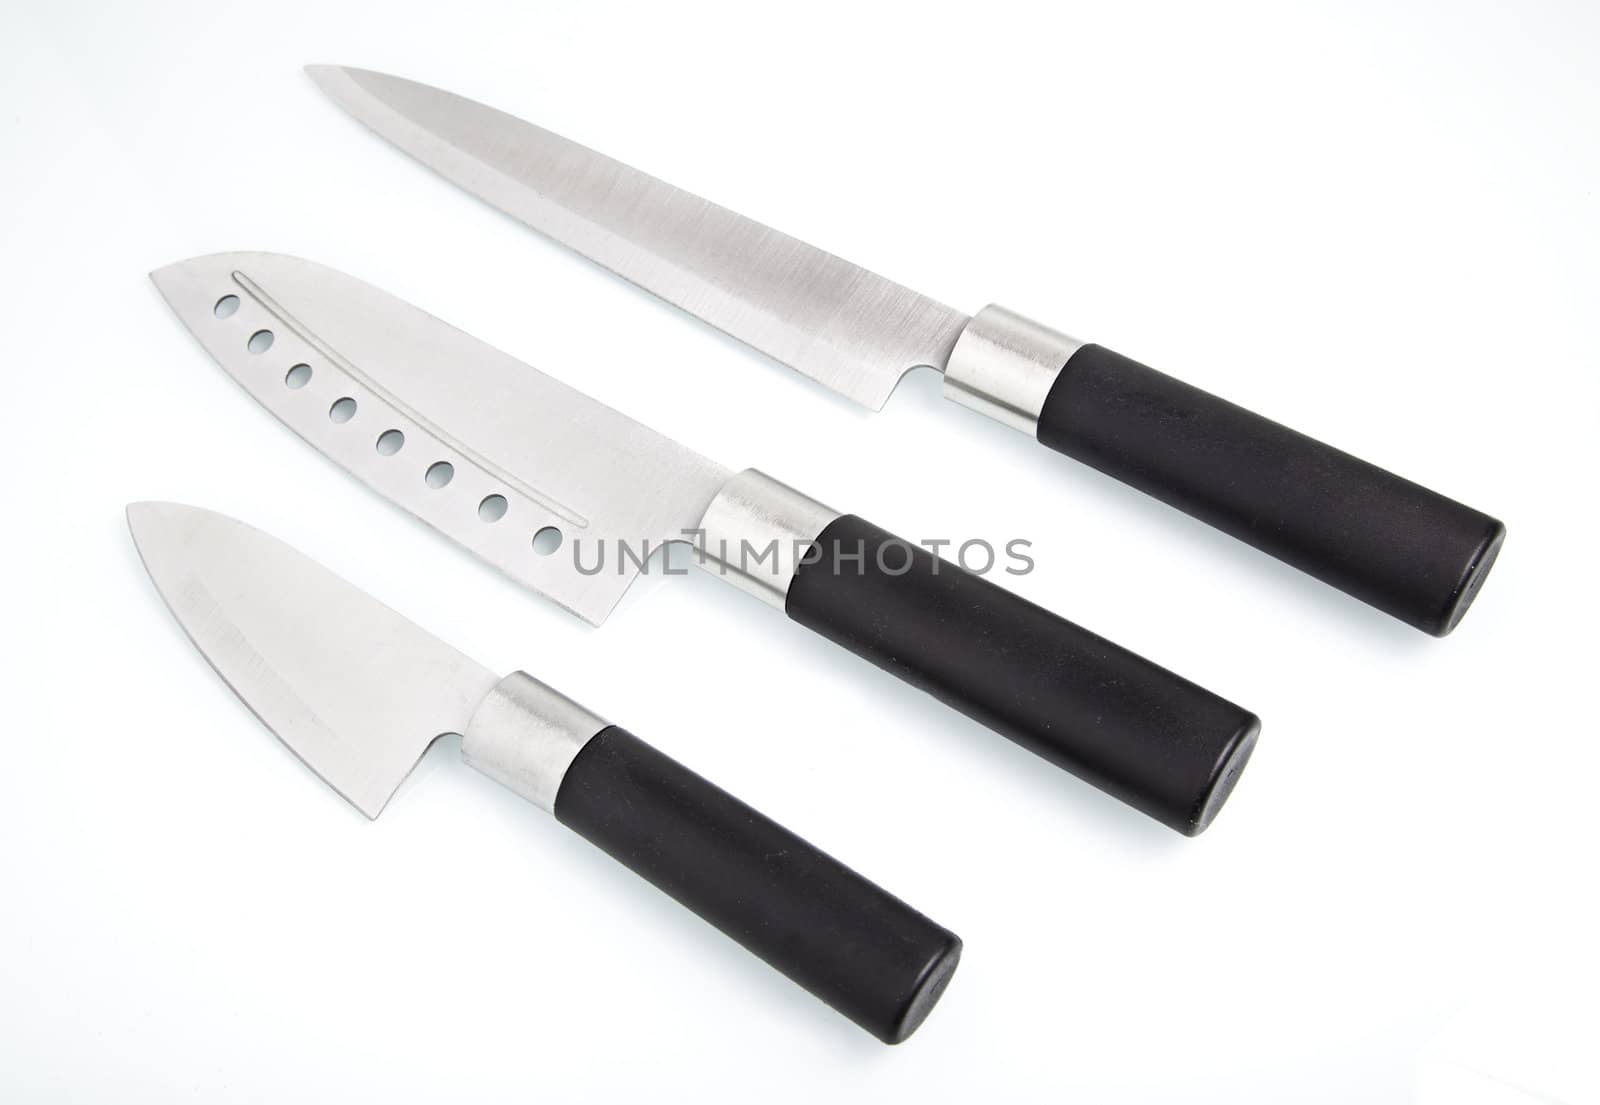 Kitchen knives by esebene